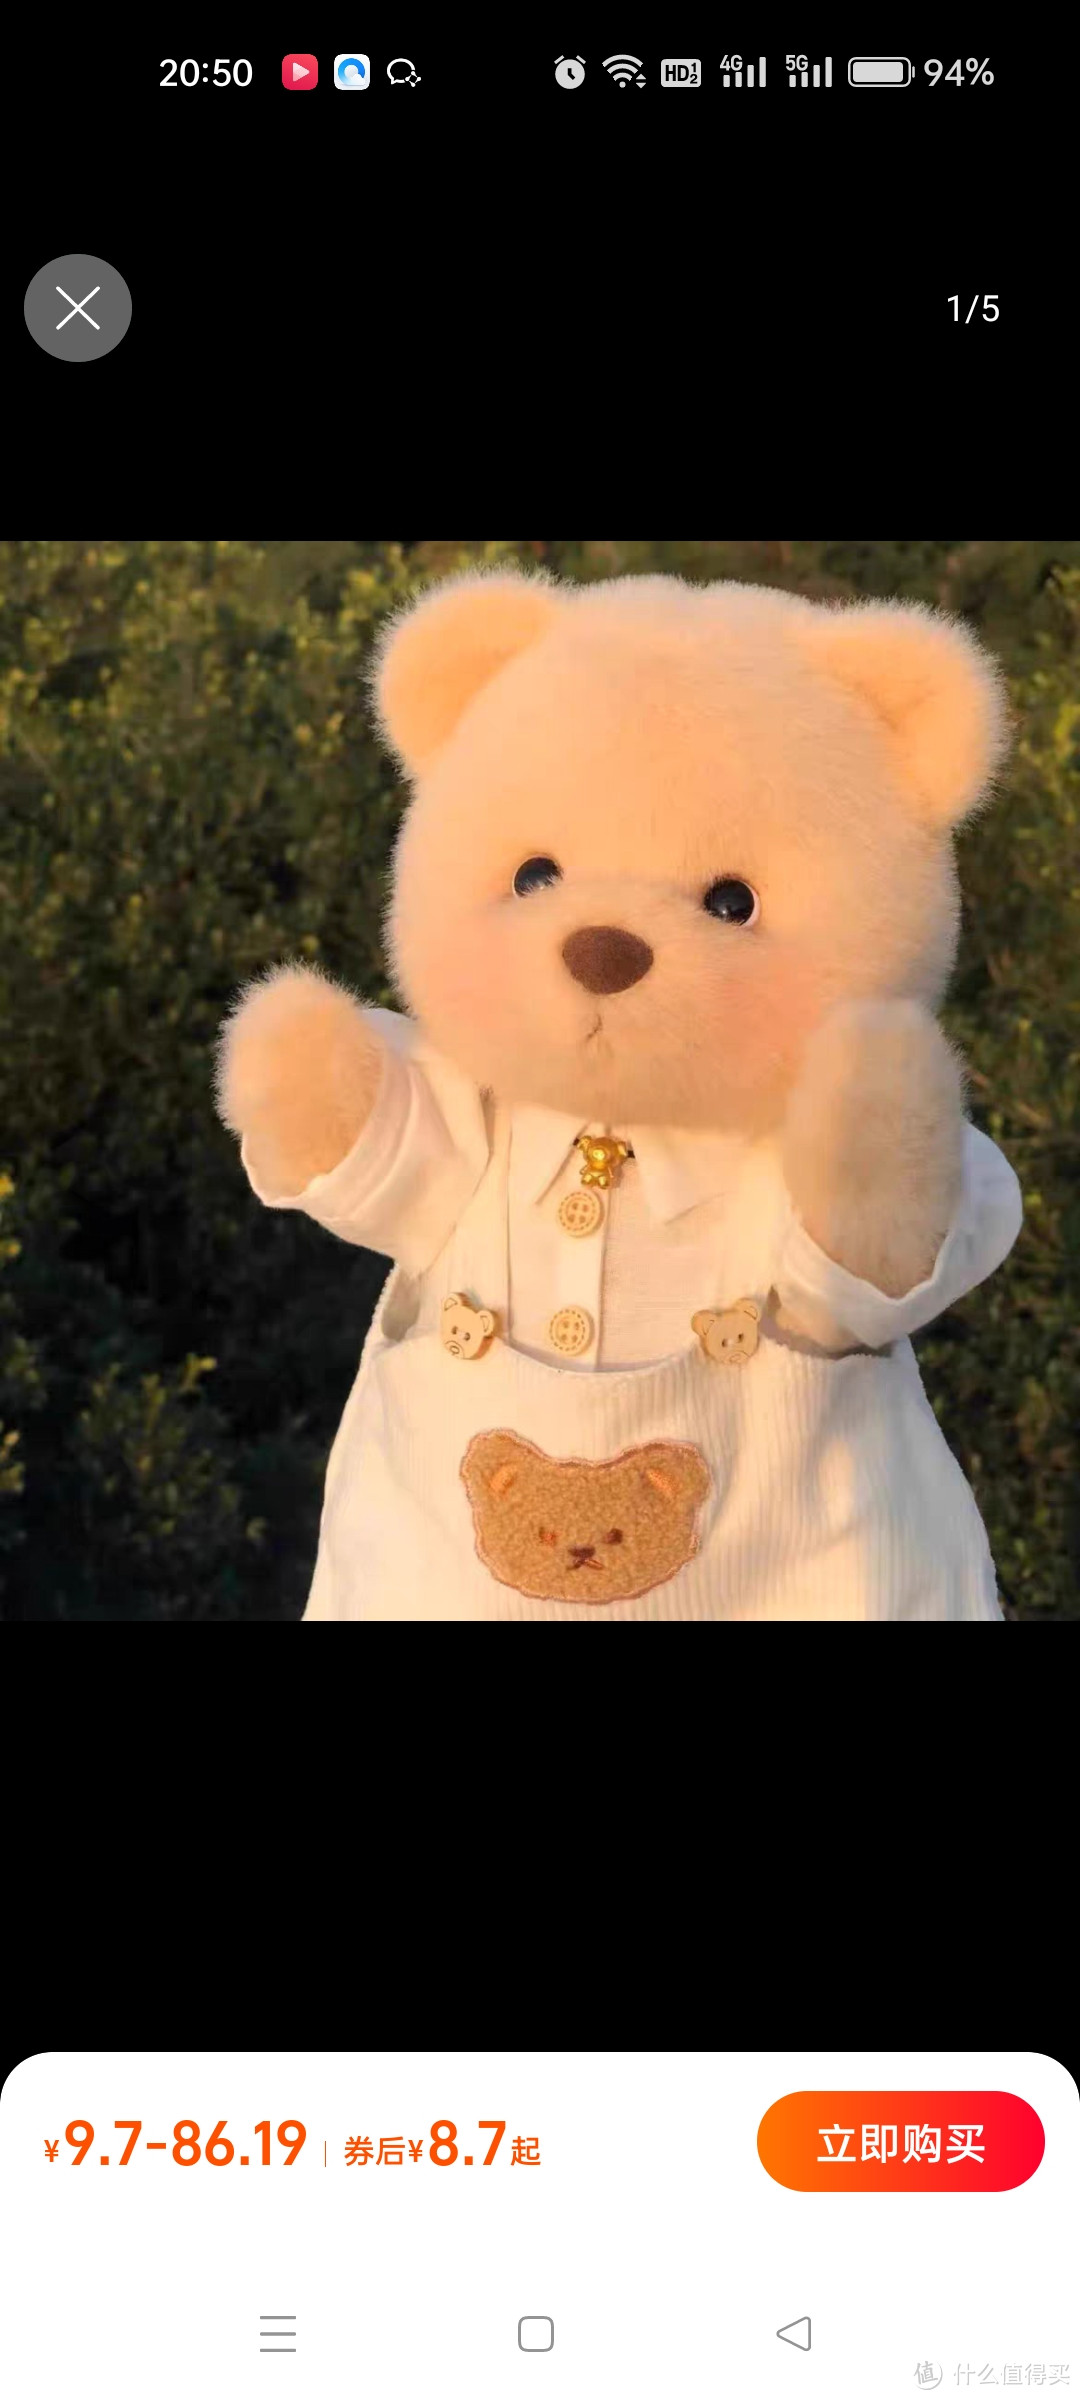 莉娜熊玩偶丽娜熊玩具礼物娃娃公仔泰迪熊手工复刻版蒂娜熊